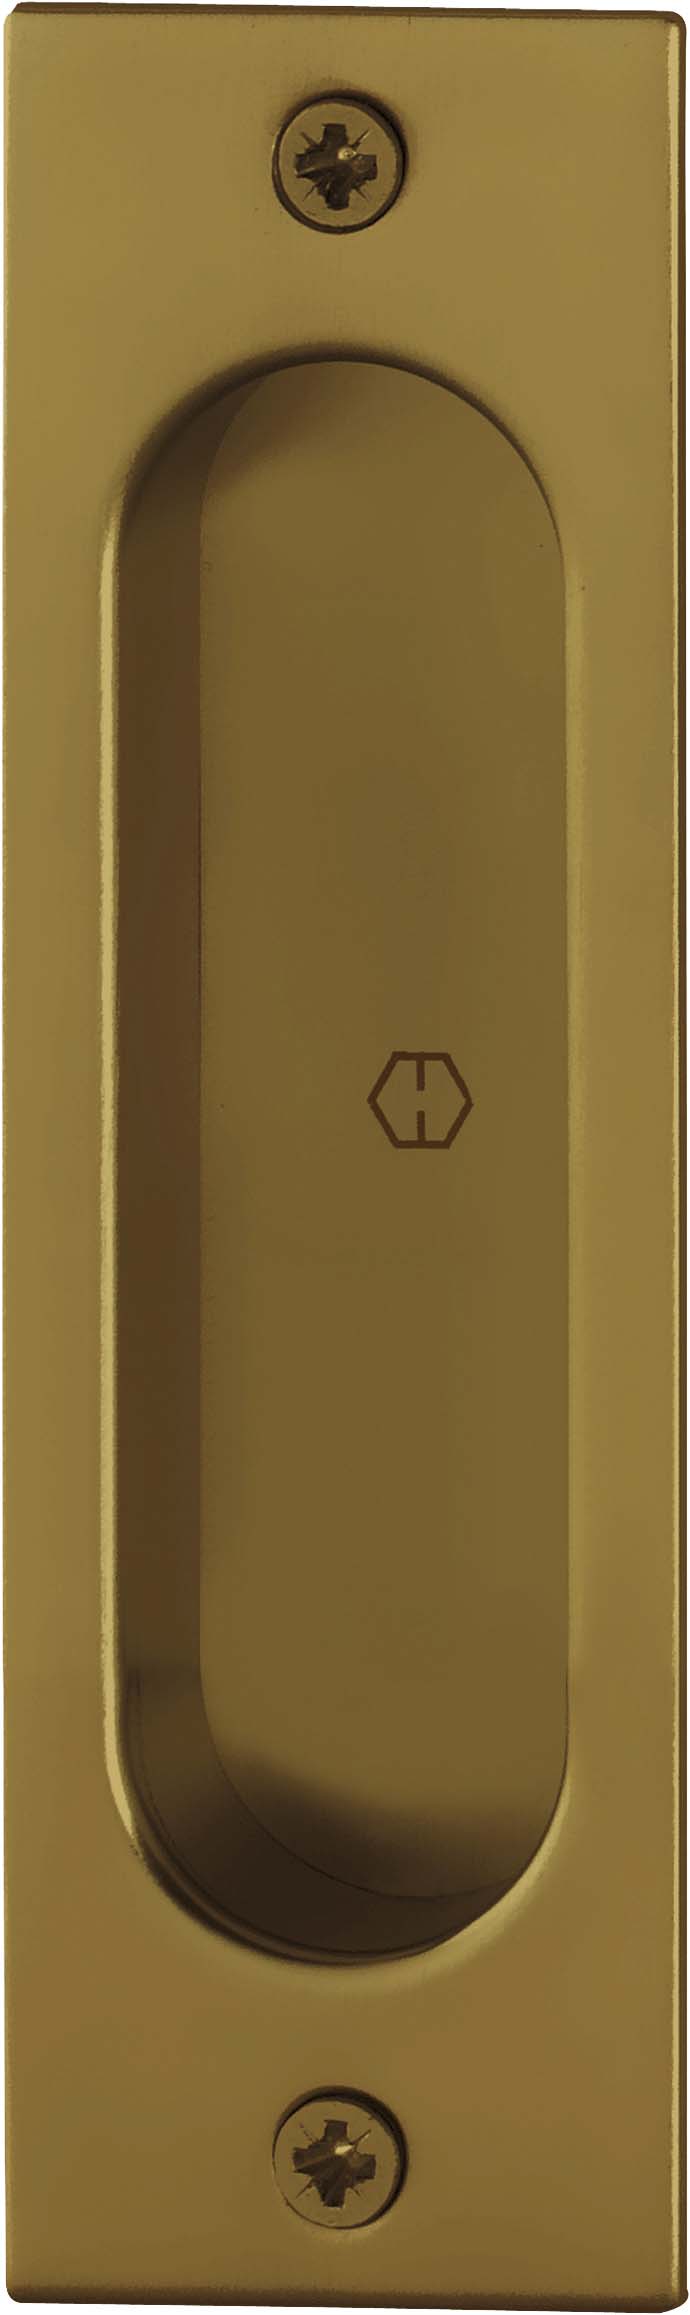 Sliding-door-handle-rectangle-bronze